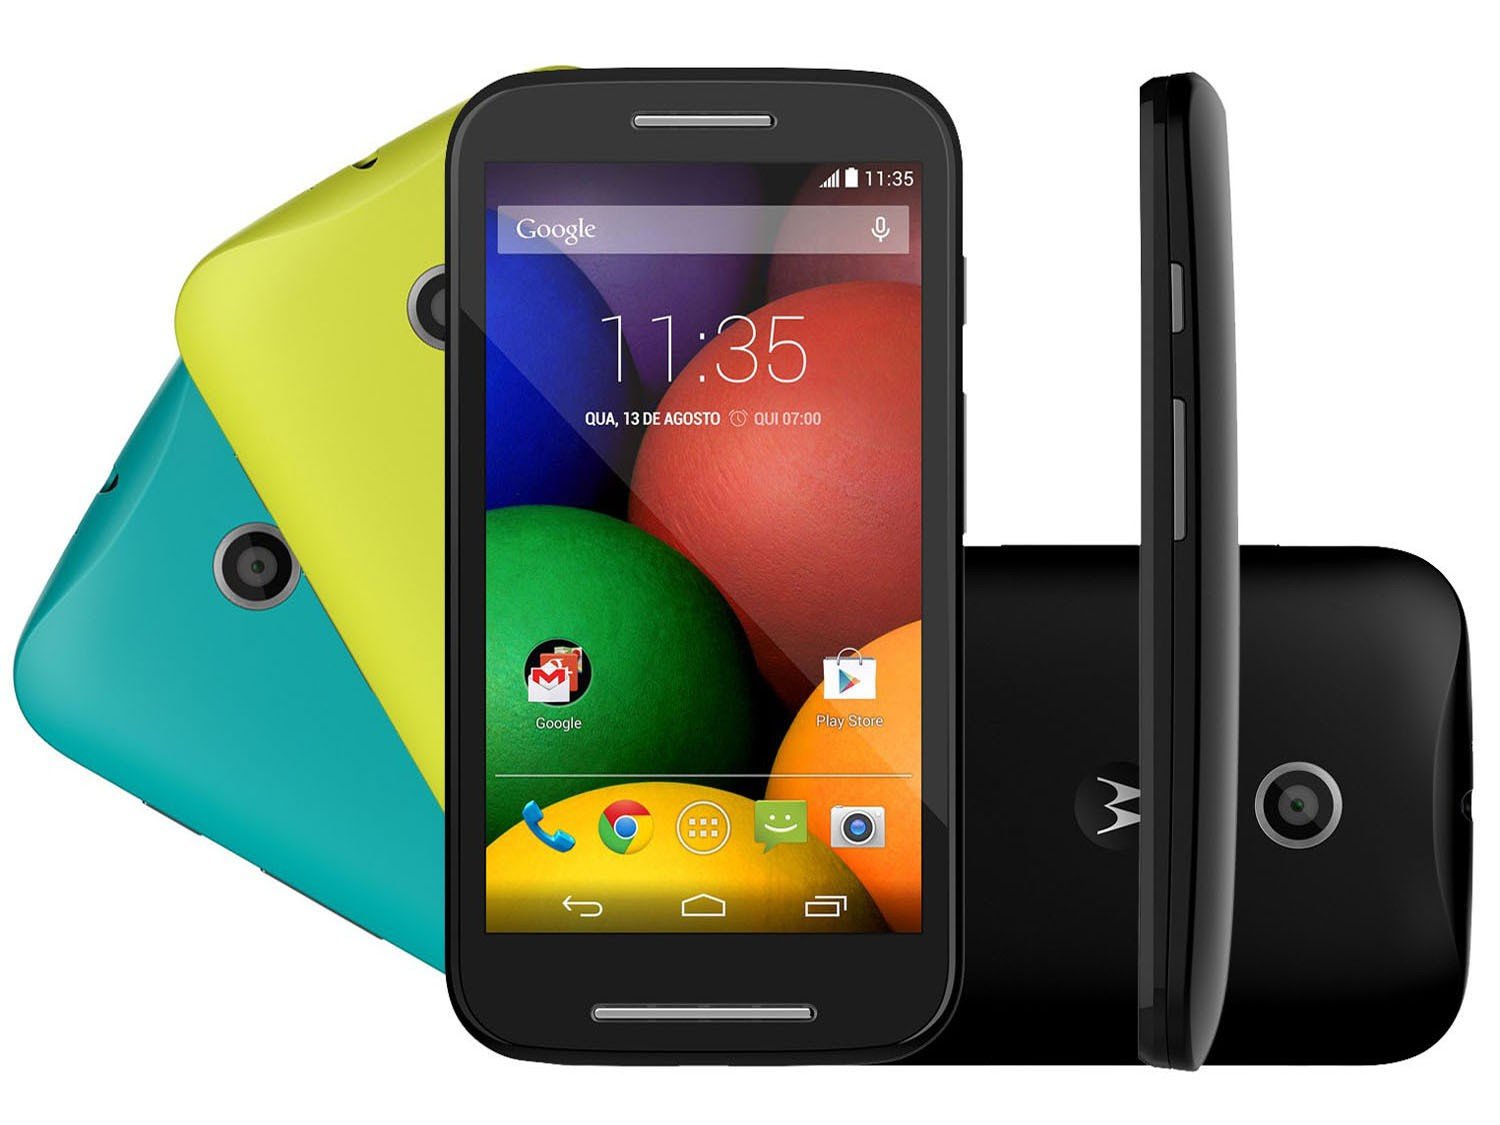 Celular Motorola Moto E XT1021 Preto, processador de  Dual-Core,  Bluetooth Versão , Android  KitKat, Quad-Band 850/900/1800/1900